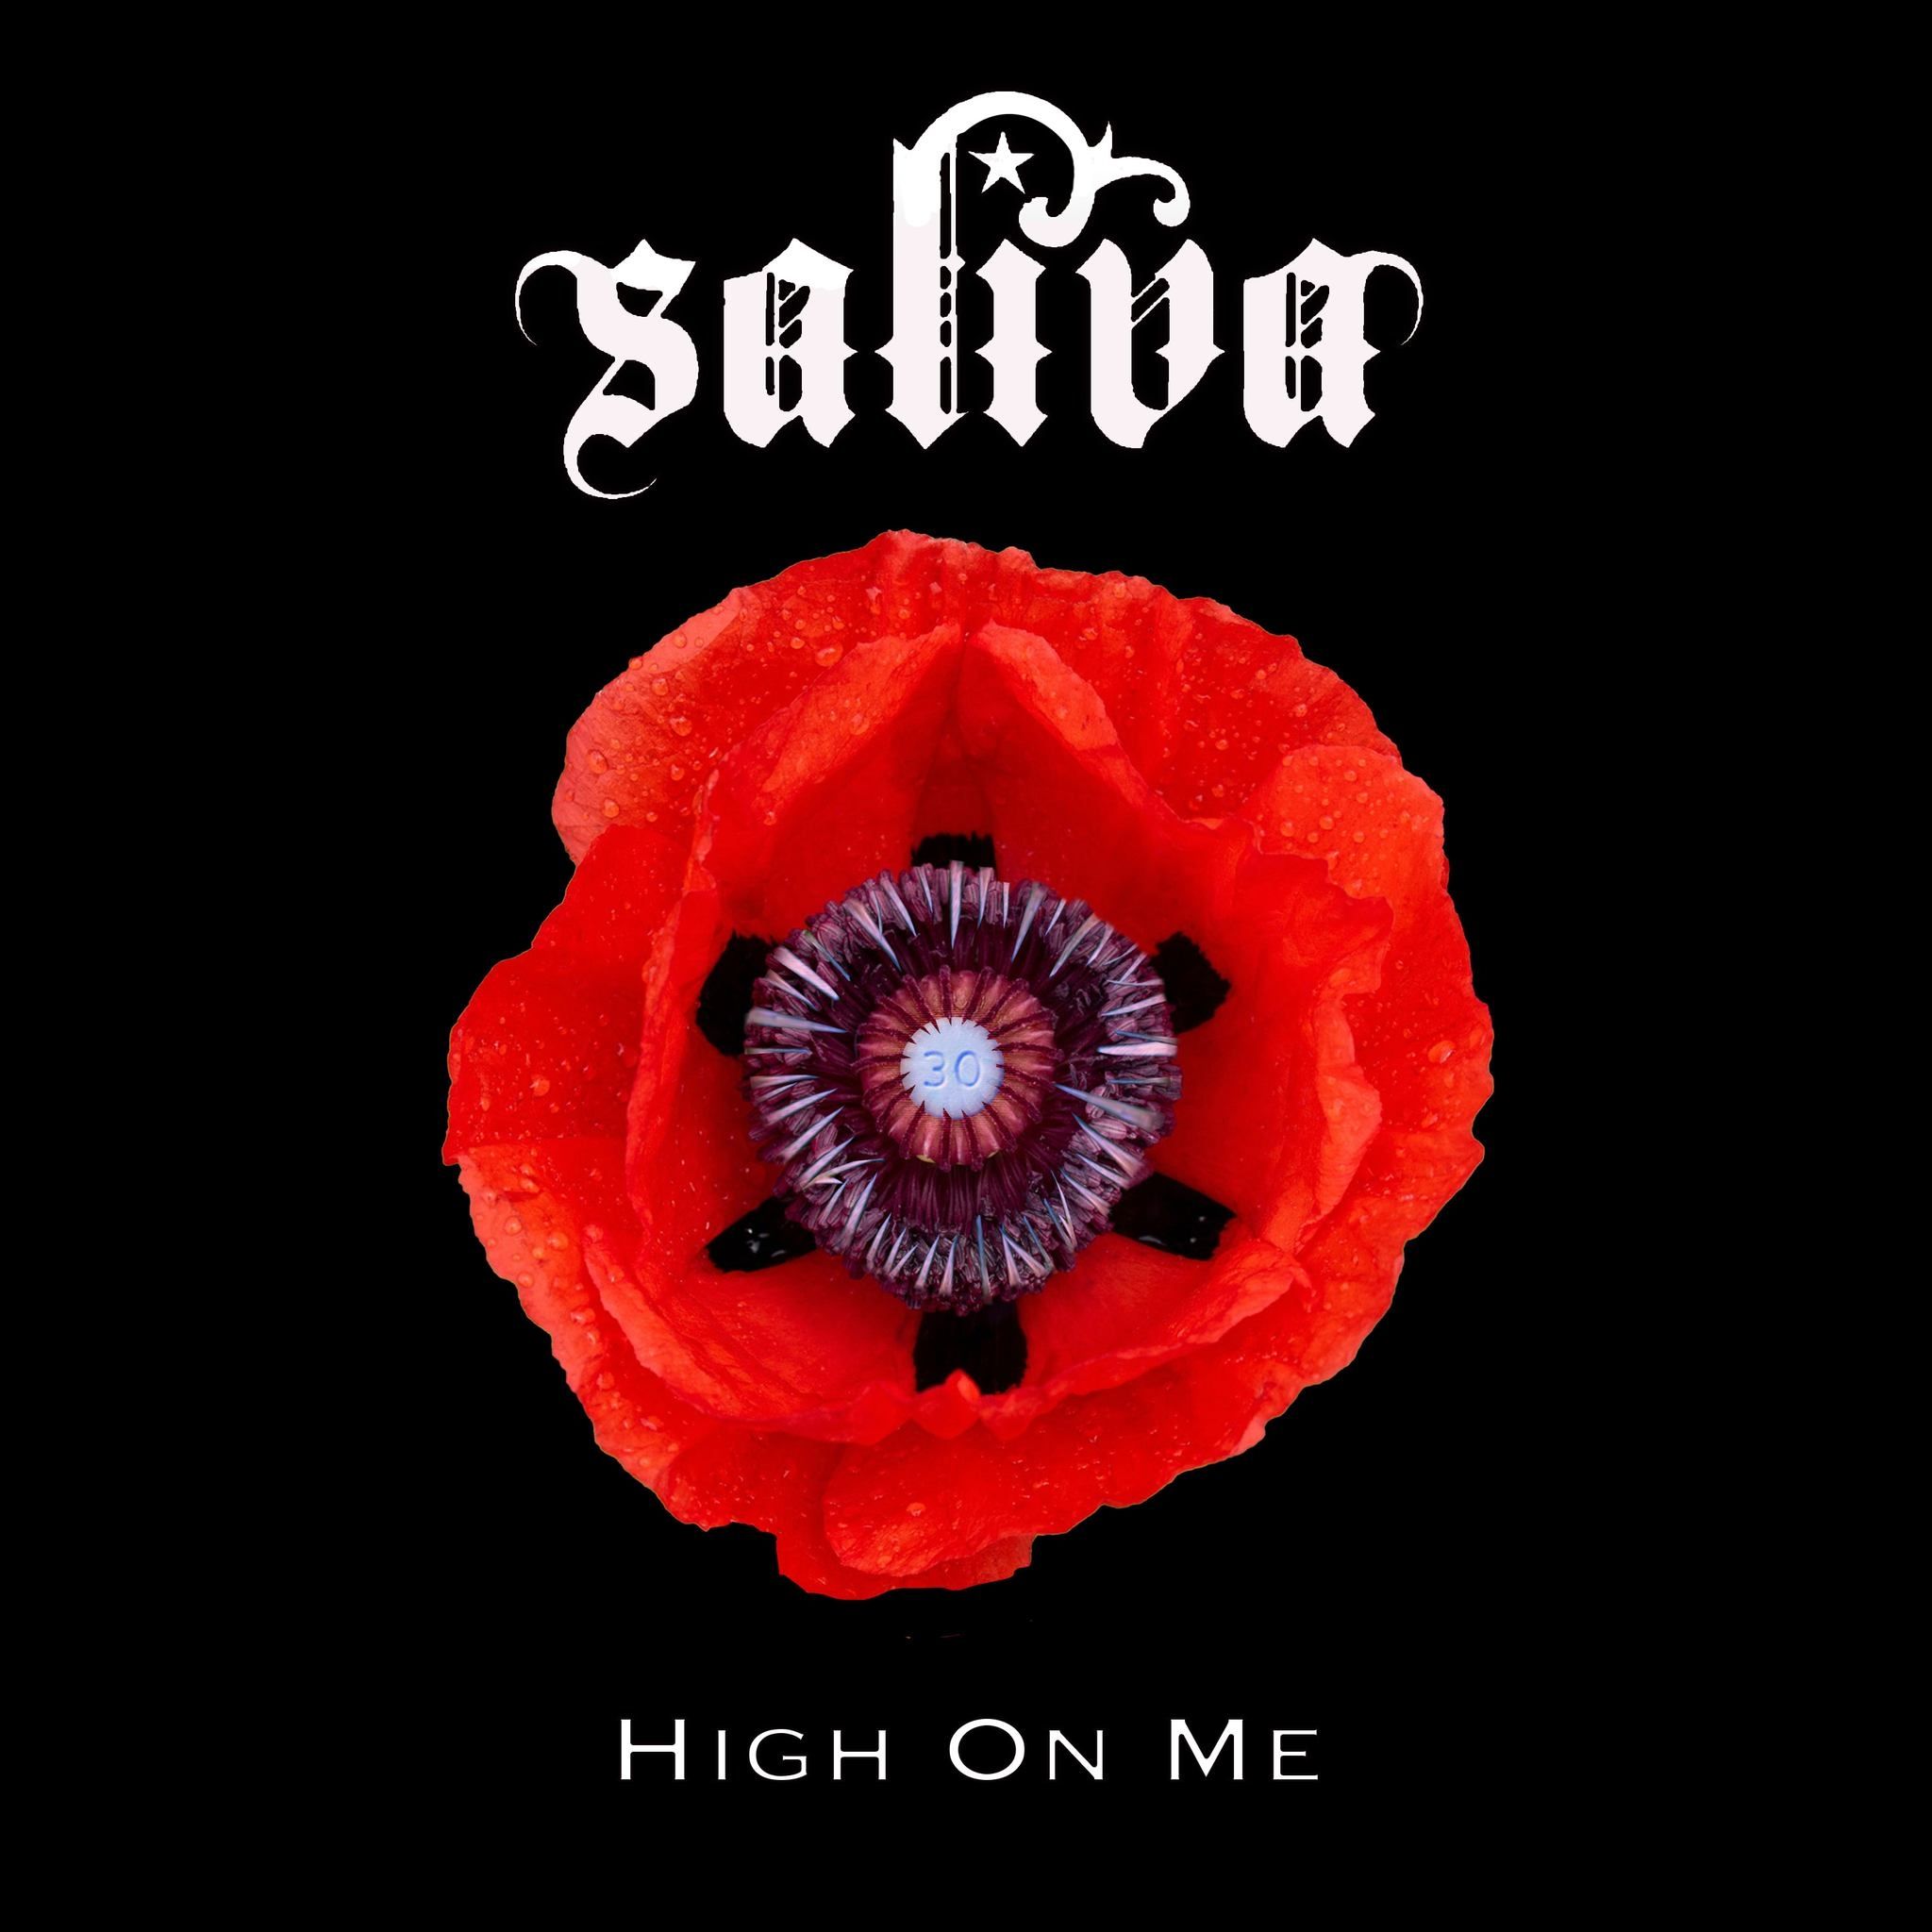 Neue Single 'High On Me' veröffentlicht